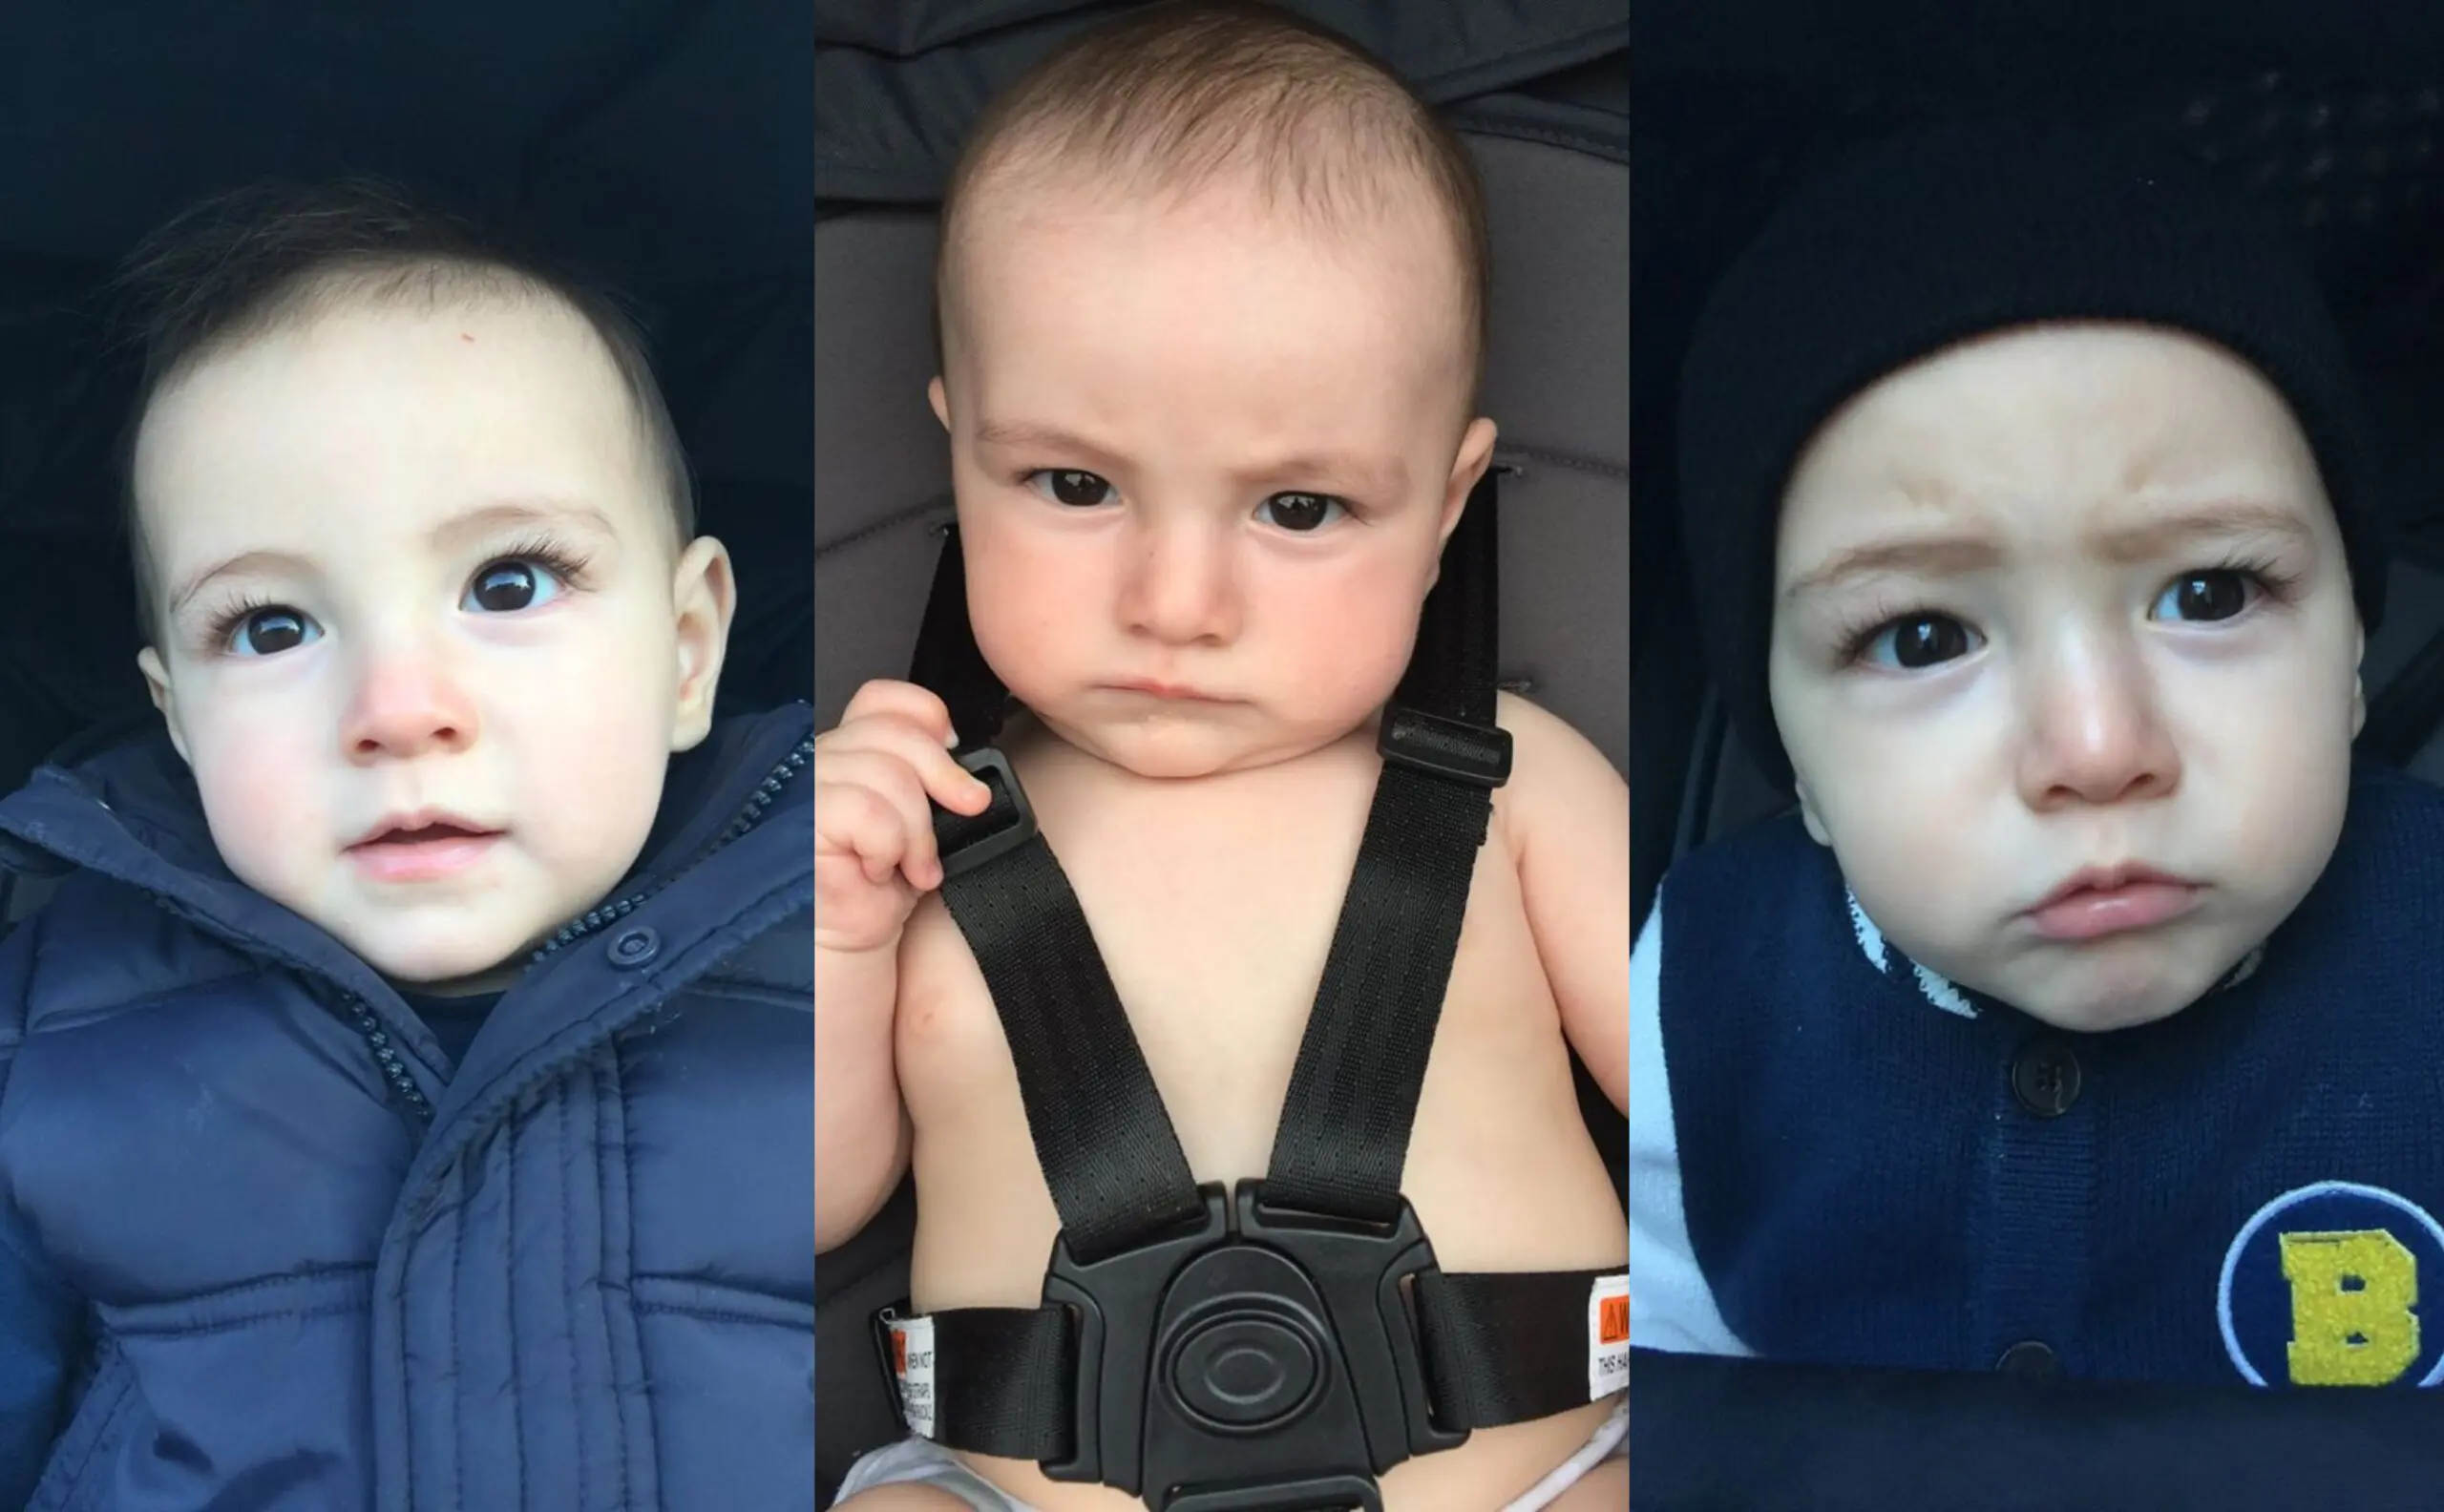 Viral Wajah Anak ‘Mixed’, Tapi Rupanya Dalam Gambar Tu Bukan Ibu Bapa Kandung?